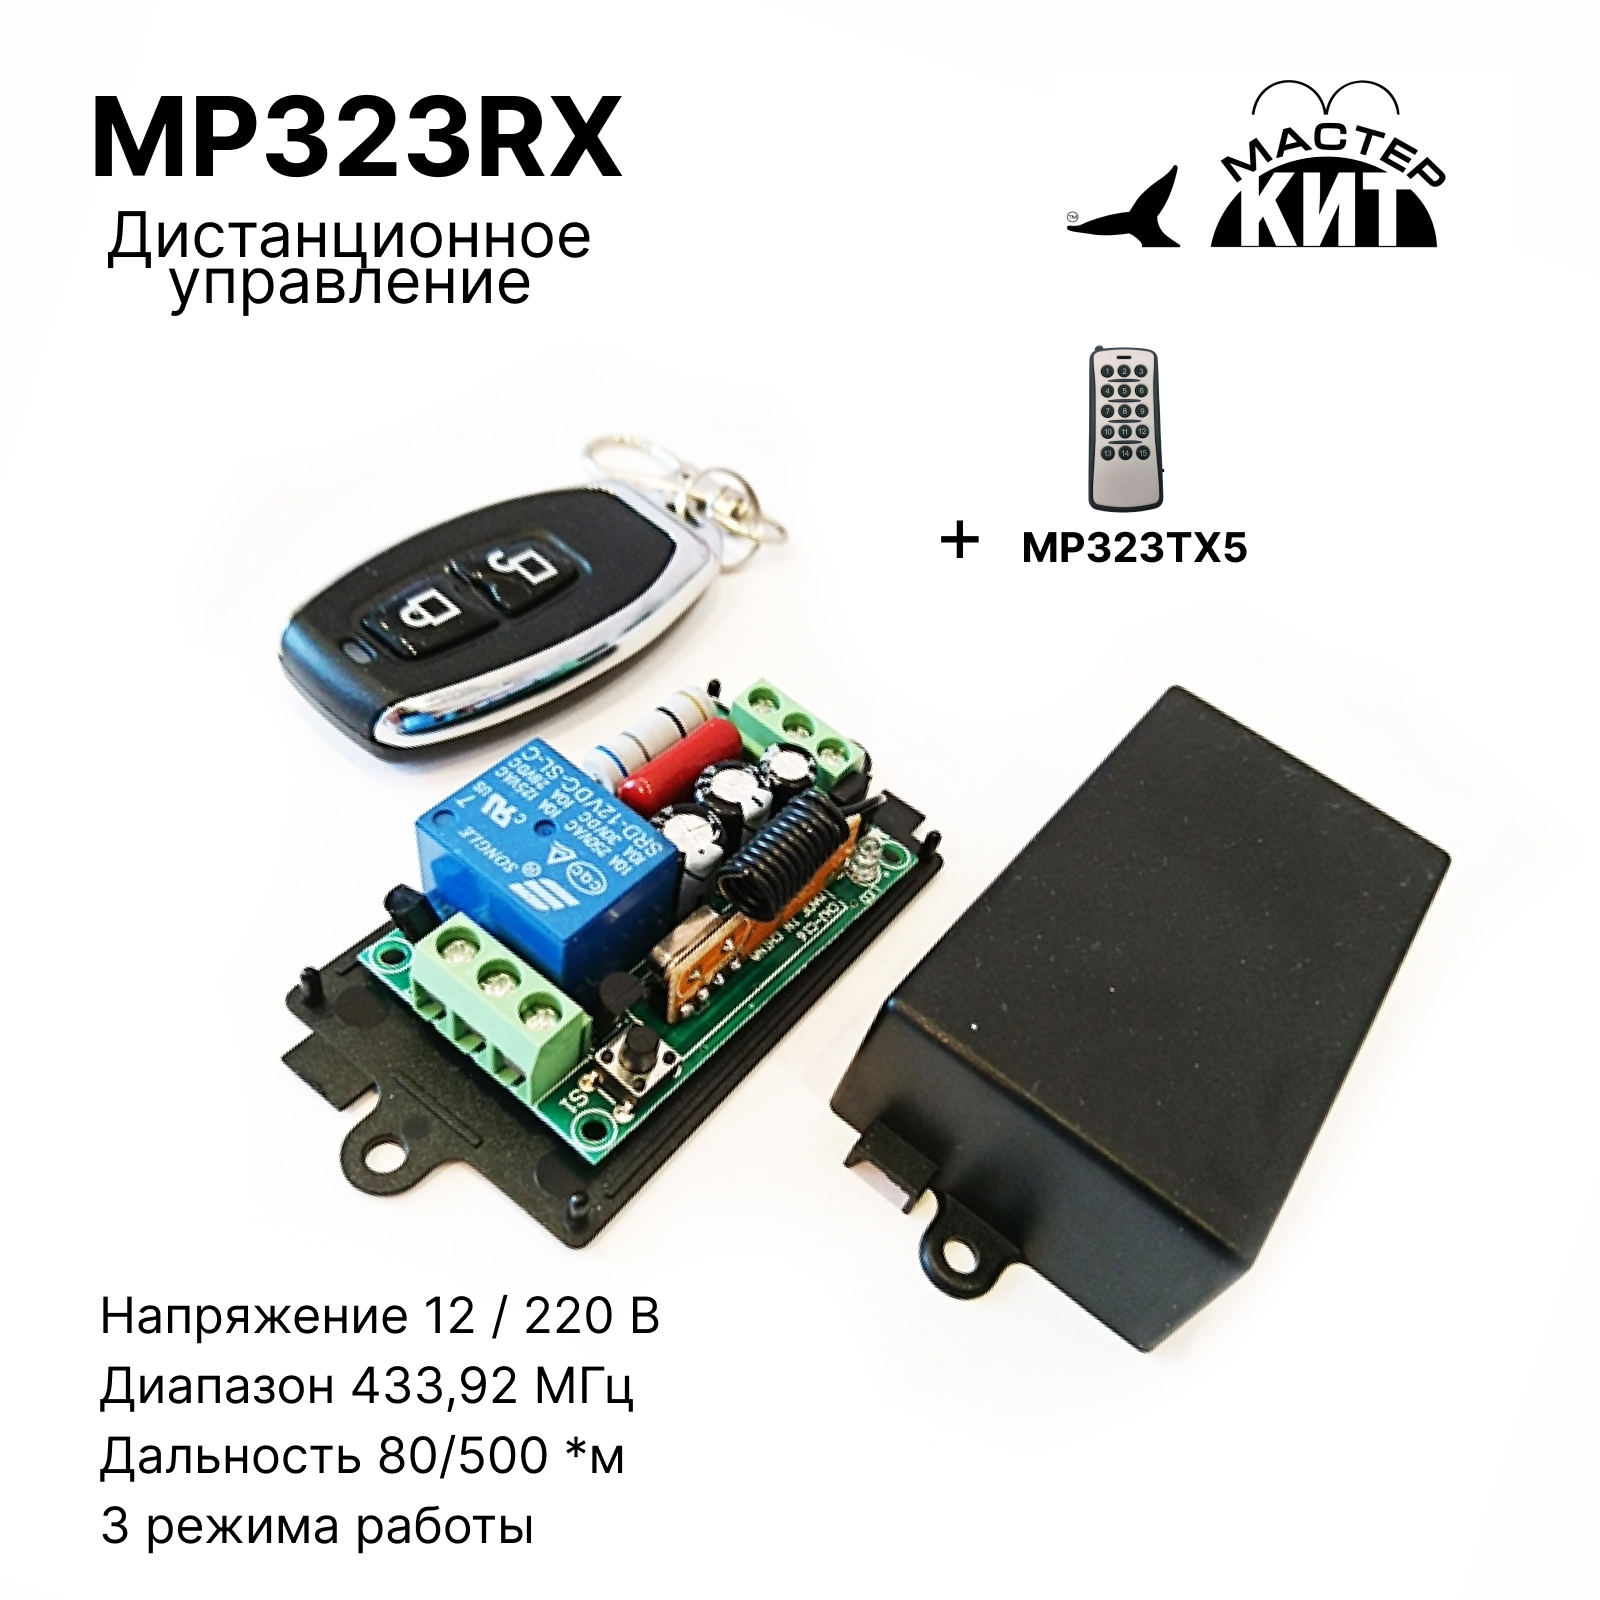 Универсальный комплект дистанционного управления Мастер Кит MP323RX 433МГц комплект для беспроводного управления освещением tdm